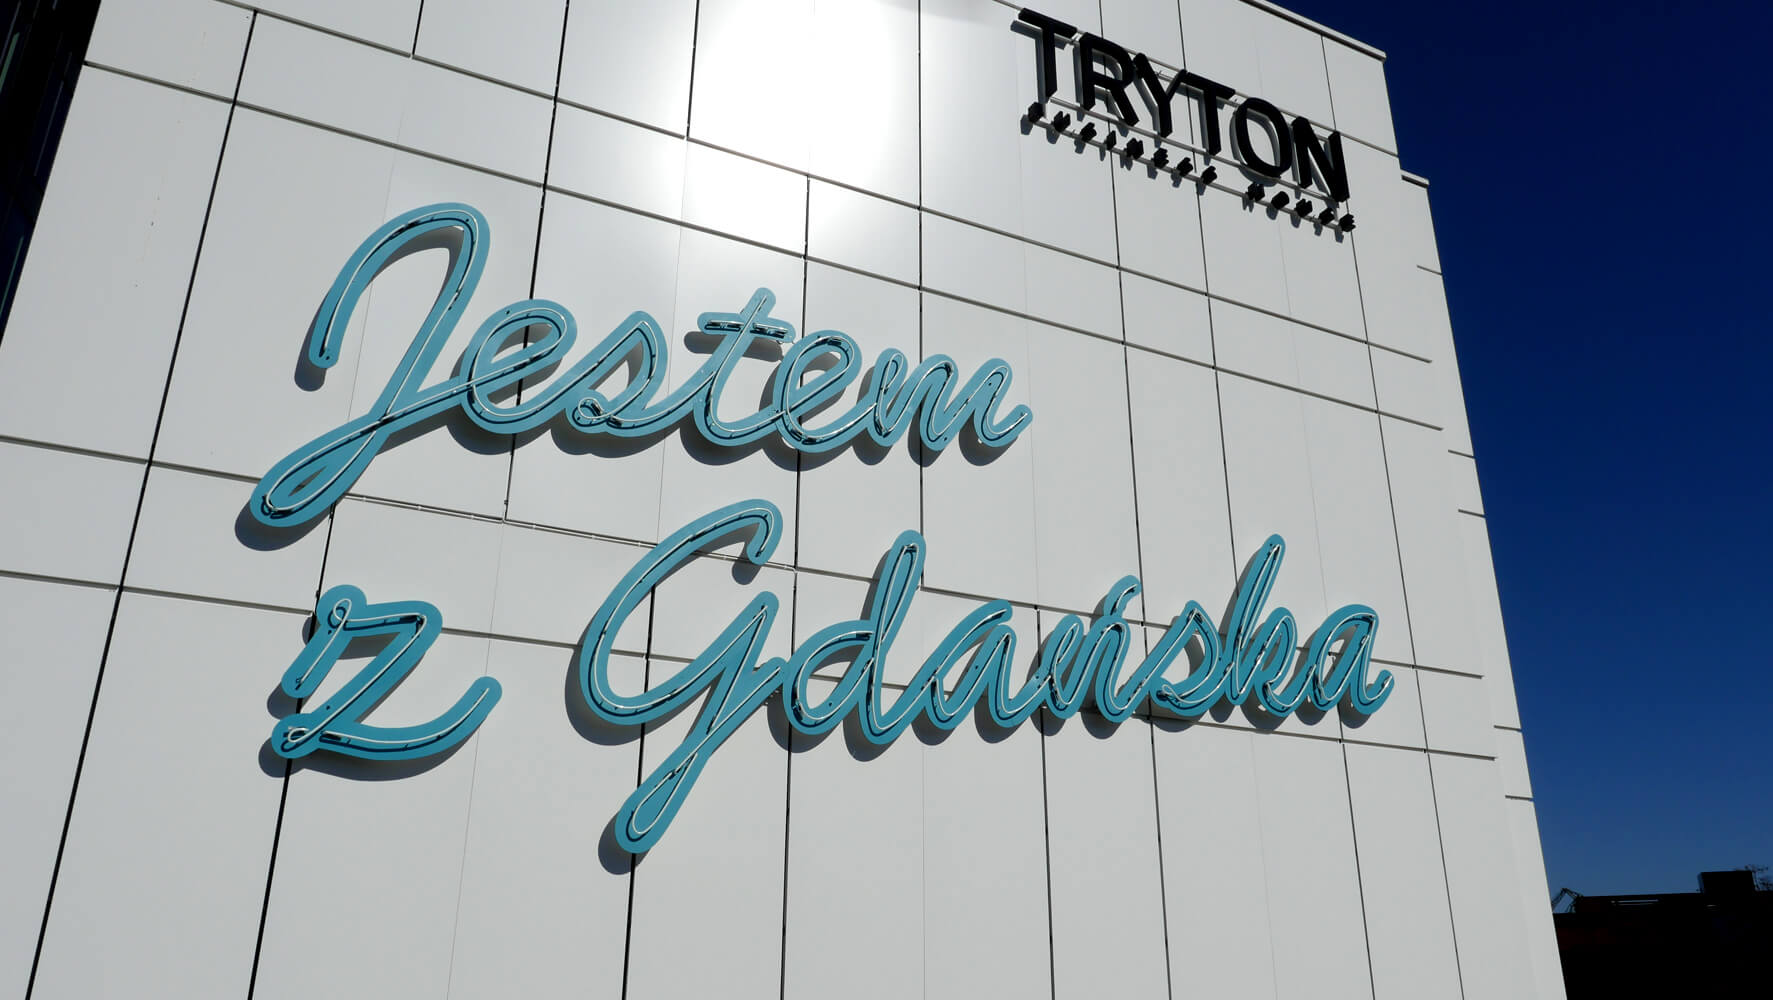 Triton - Tryton - Leuchtreklame "Ich bin aus Danzig" an einer Fassade